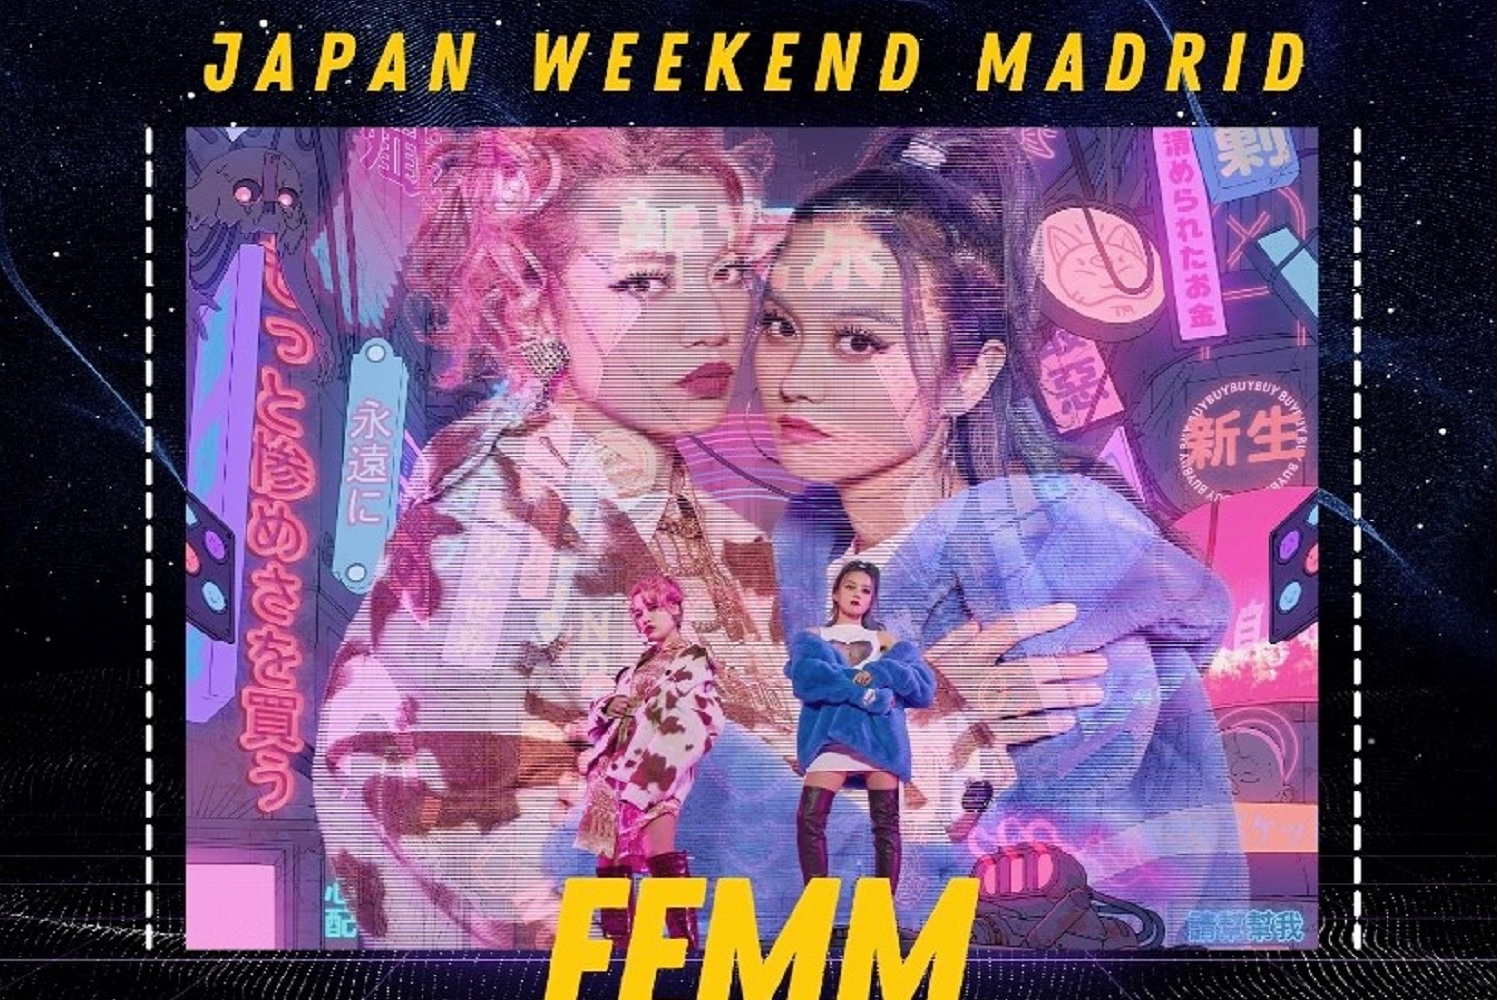 Cartel de la Japan Week Madrid